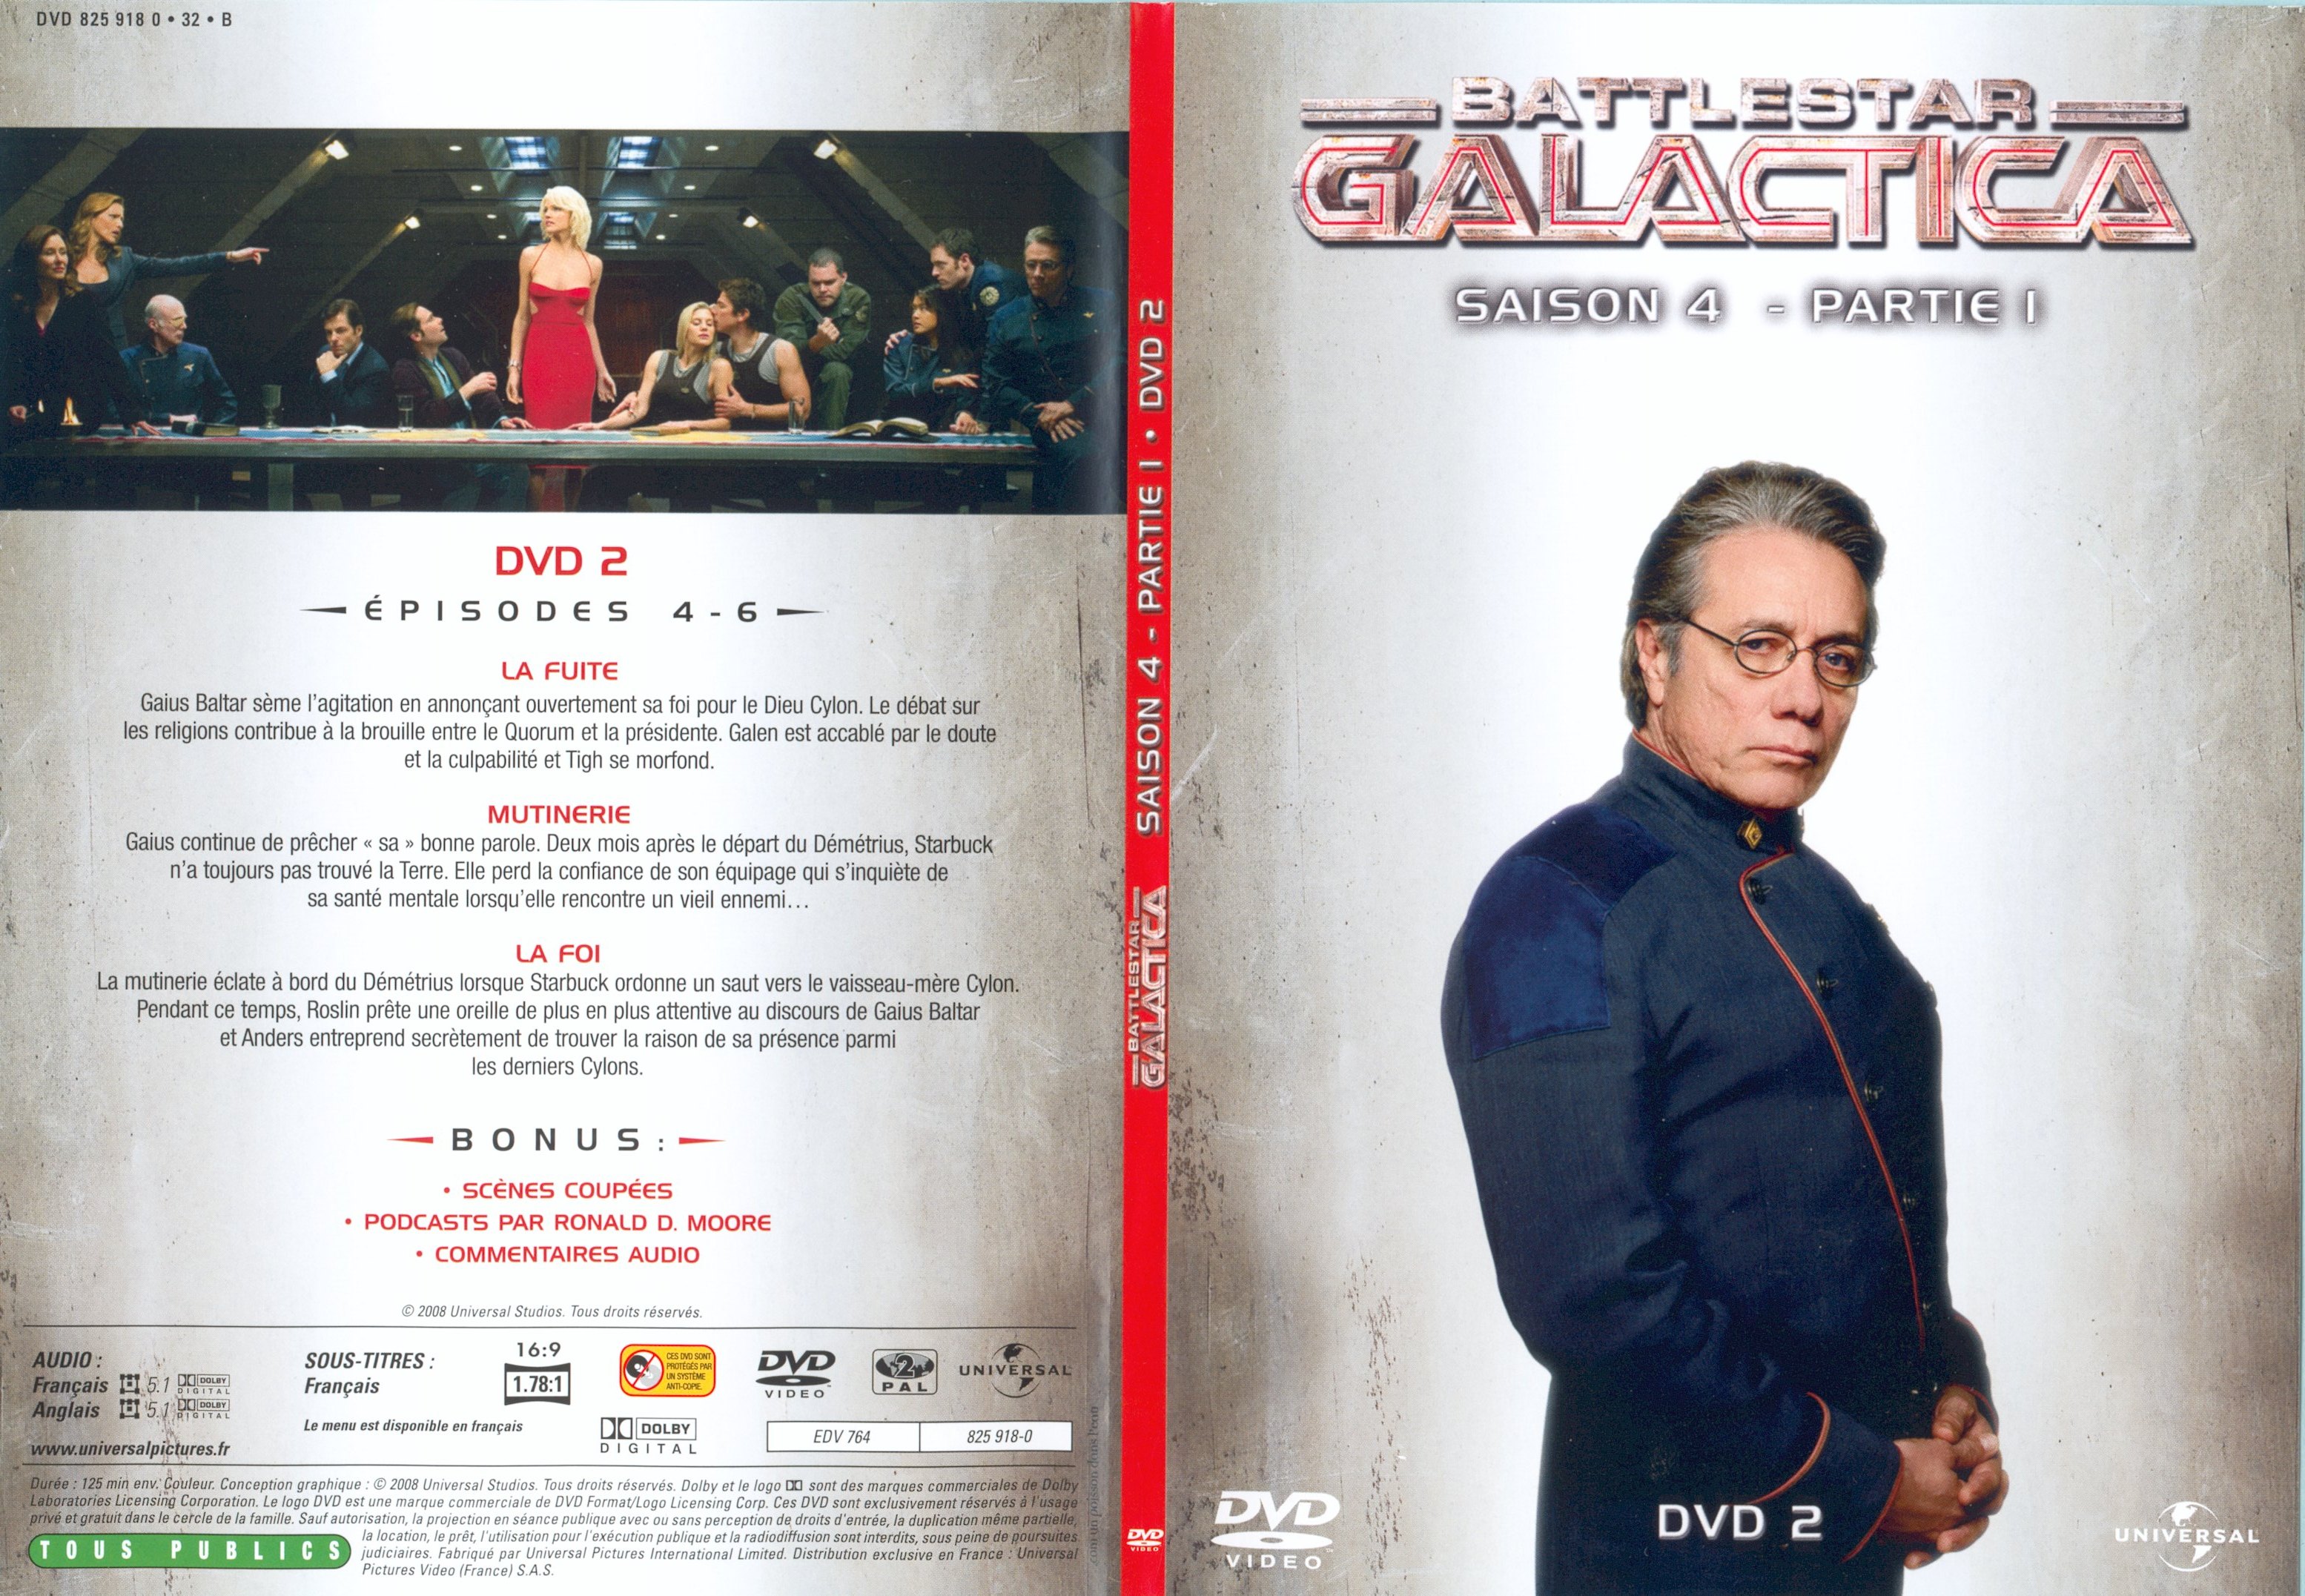 Jaquette DVD Battlestar Galactica Saison 4 partie 1 DVD 2